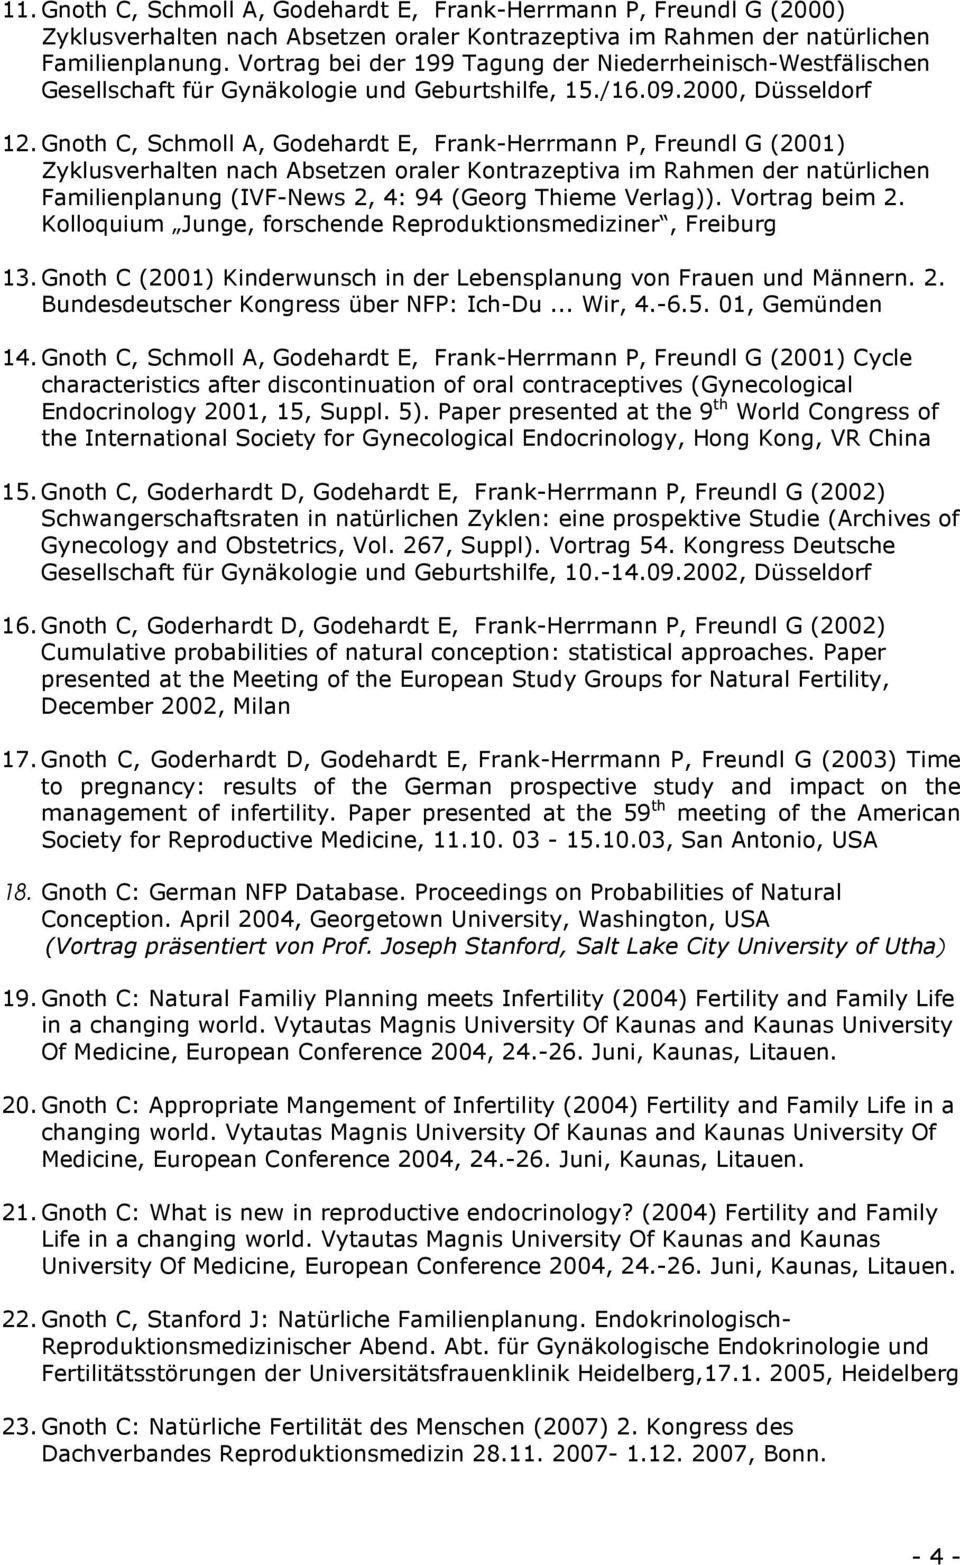 Gnoth C, Schmoll A, Godehardt E, Frank-Herrmann P, Freundl G (2001) Zyklusverhalten nach Absetzen oraler Kontrazeptiva im Rahmen der natürlichen Familienplanung (IVF-News 2, 4: 94 (Georg Thieme